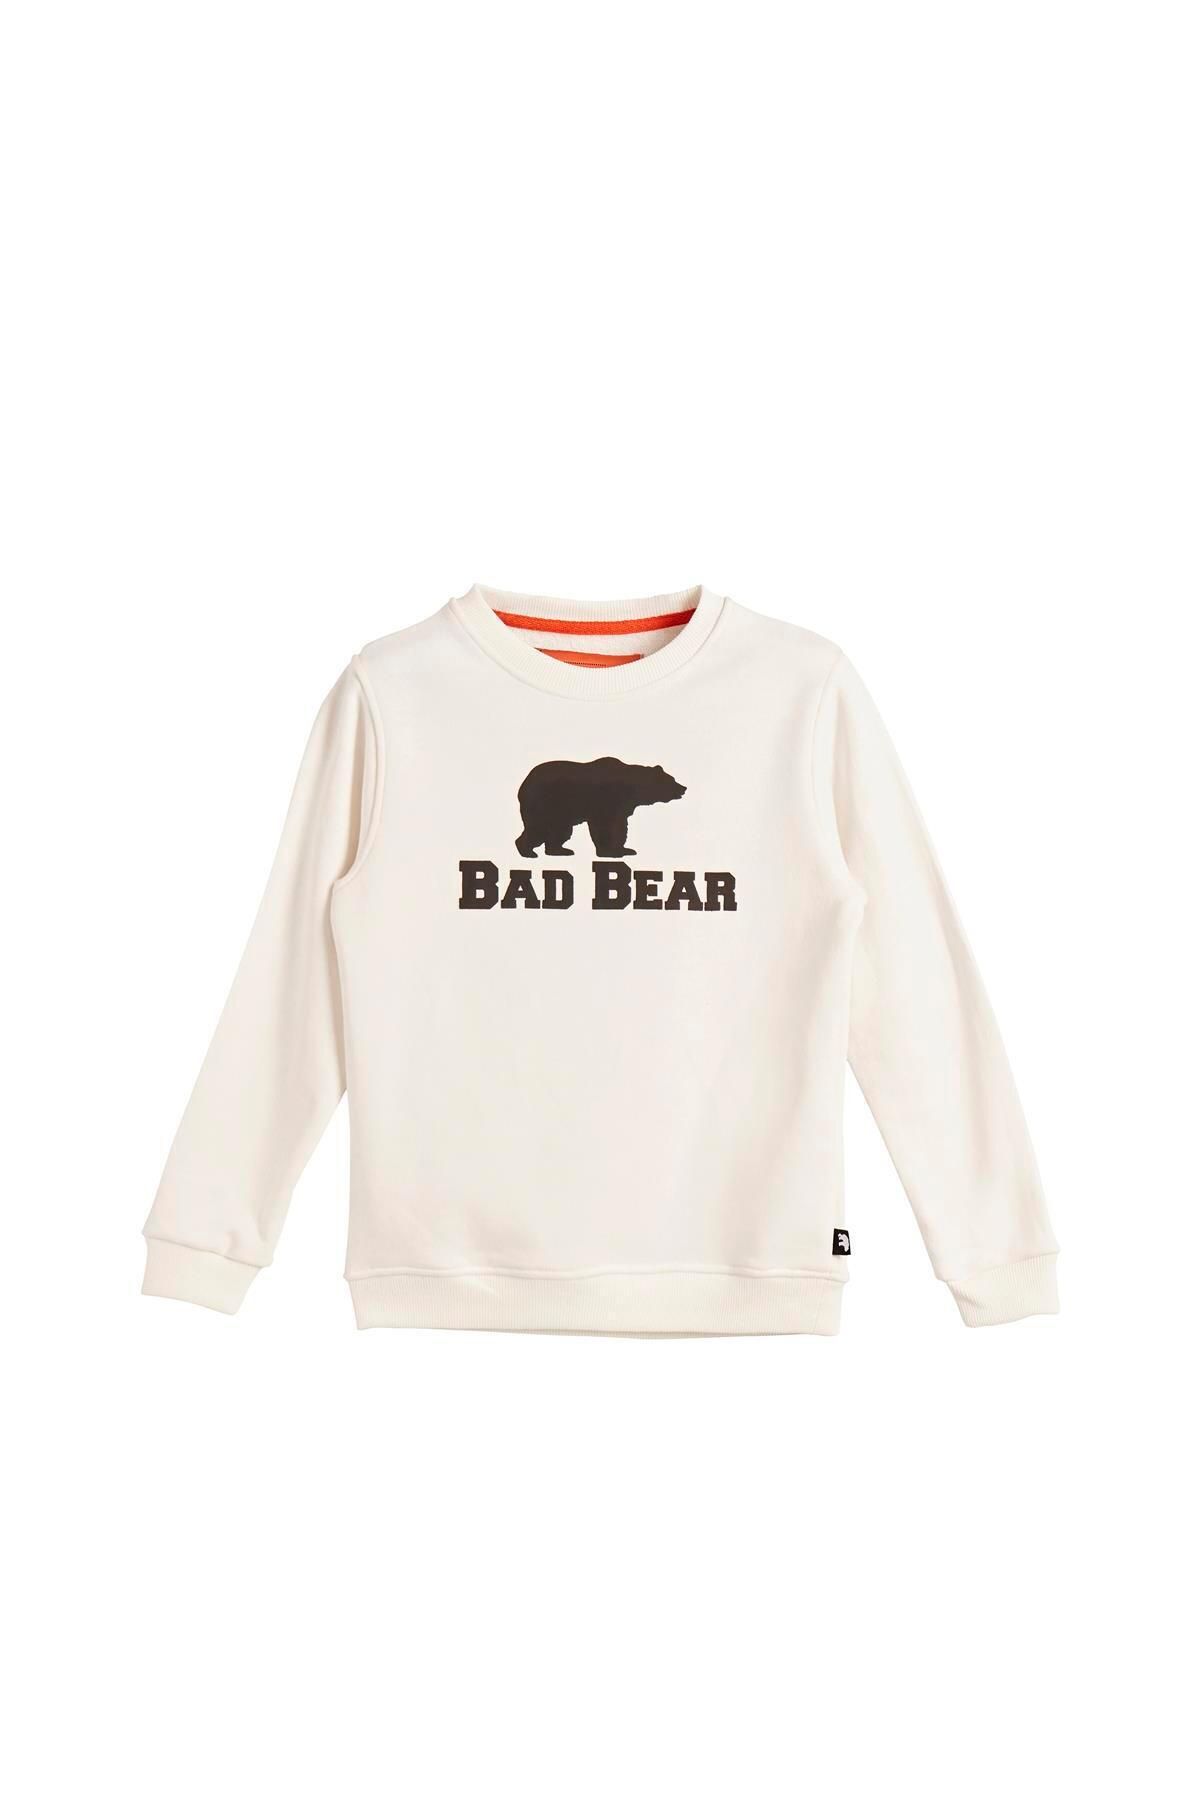 Bad Bear Logo Crewneck Kids Off-White Beyaz Baskılı Çocuk Sweatshirt